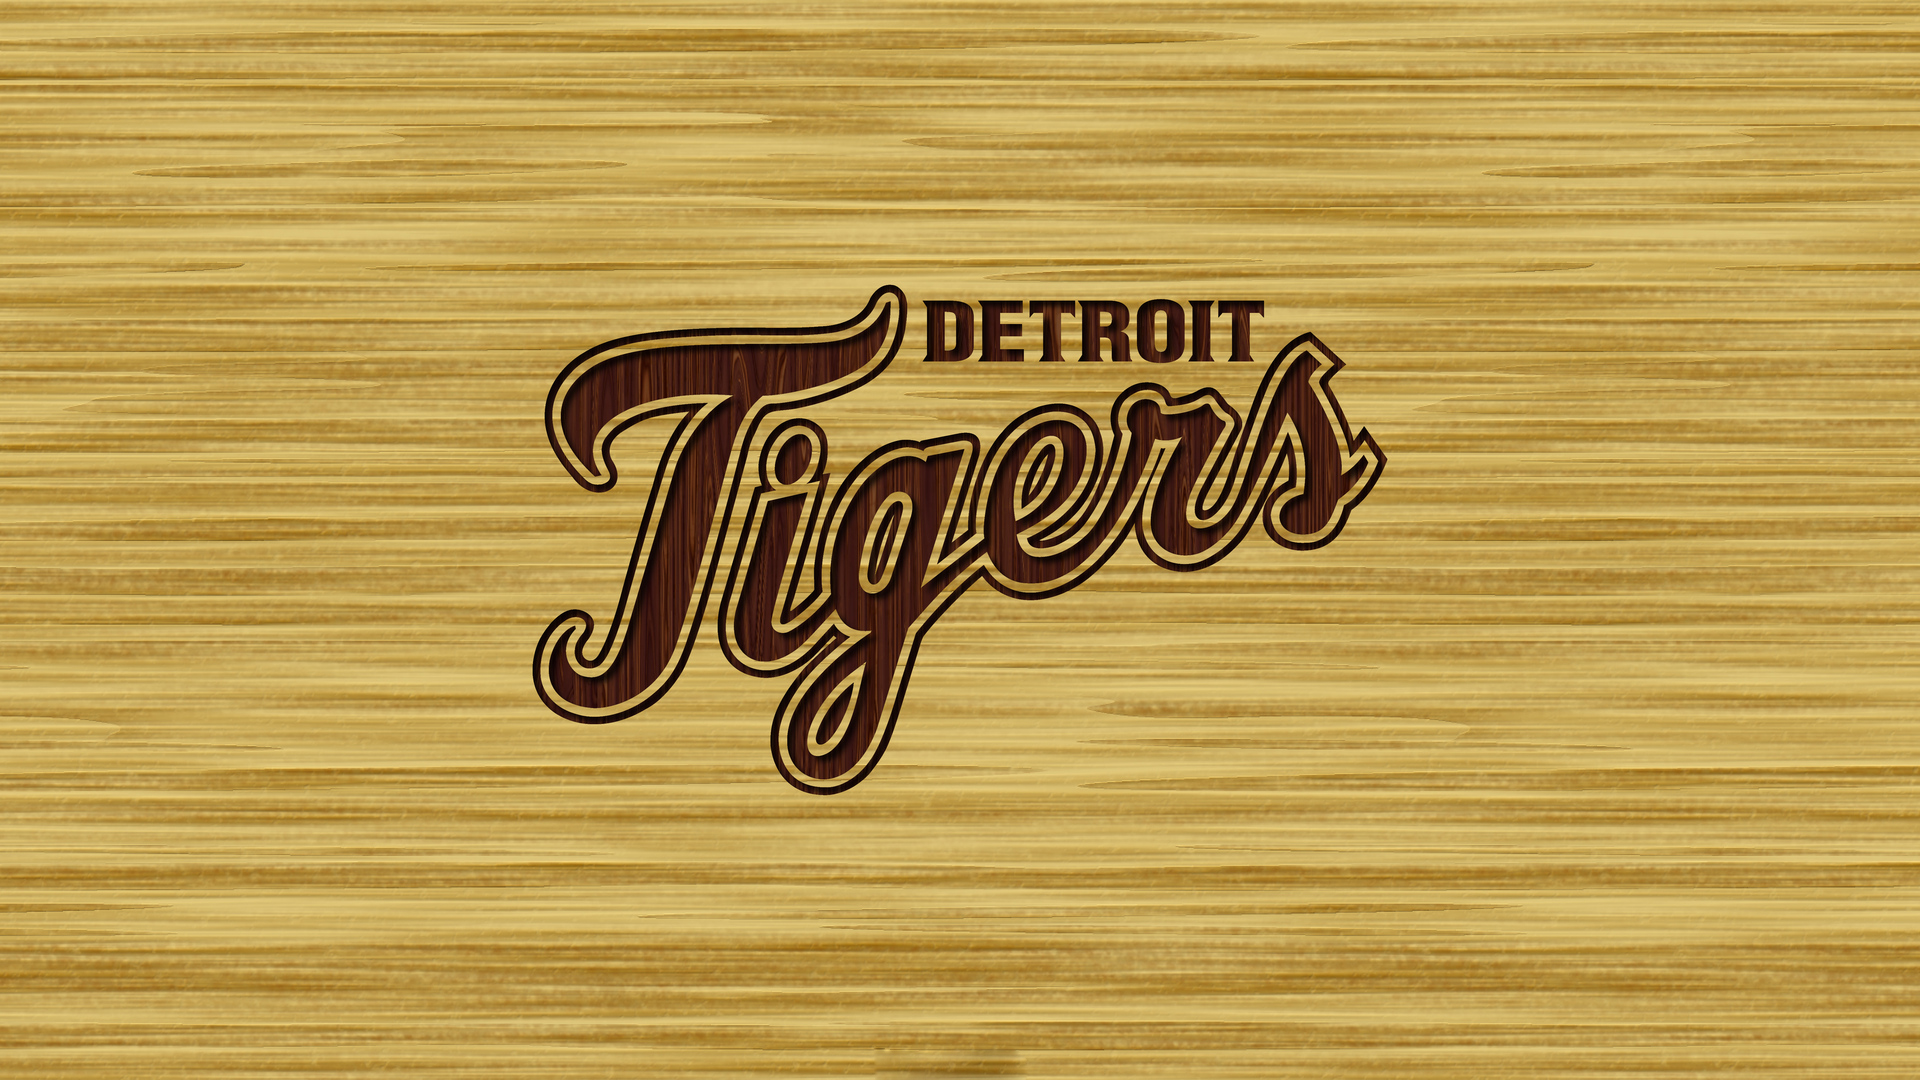 Detroit Tigers Wallpaper HD